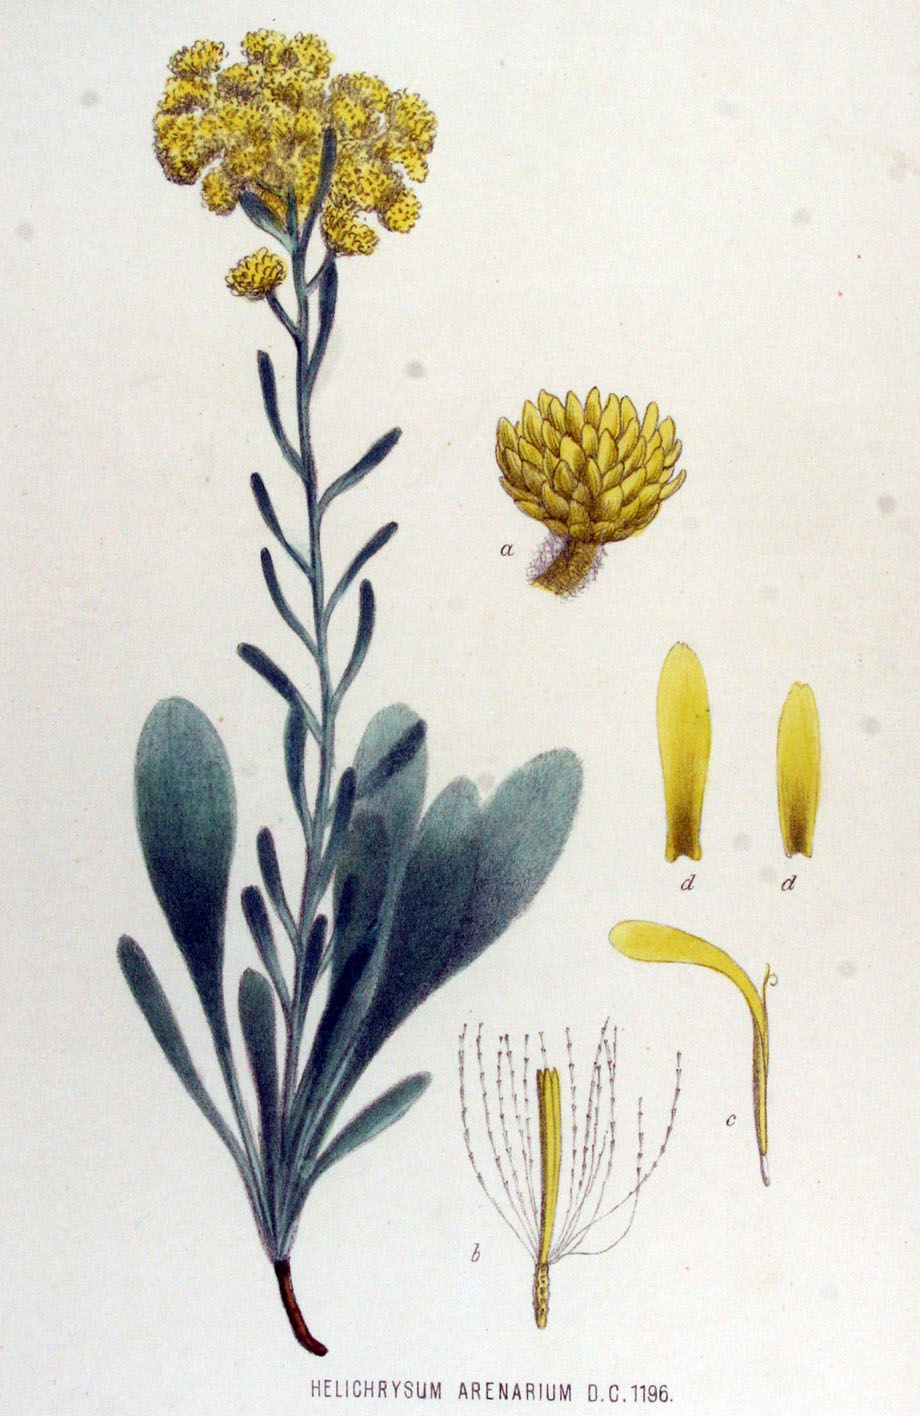 Smilje, Helichrysum arenarium